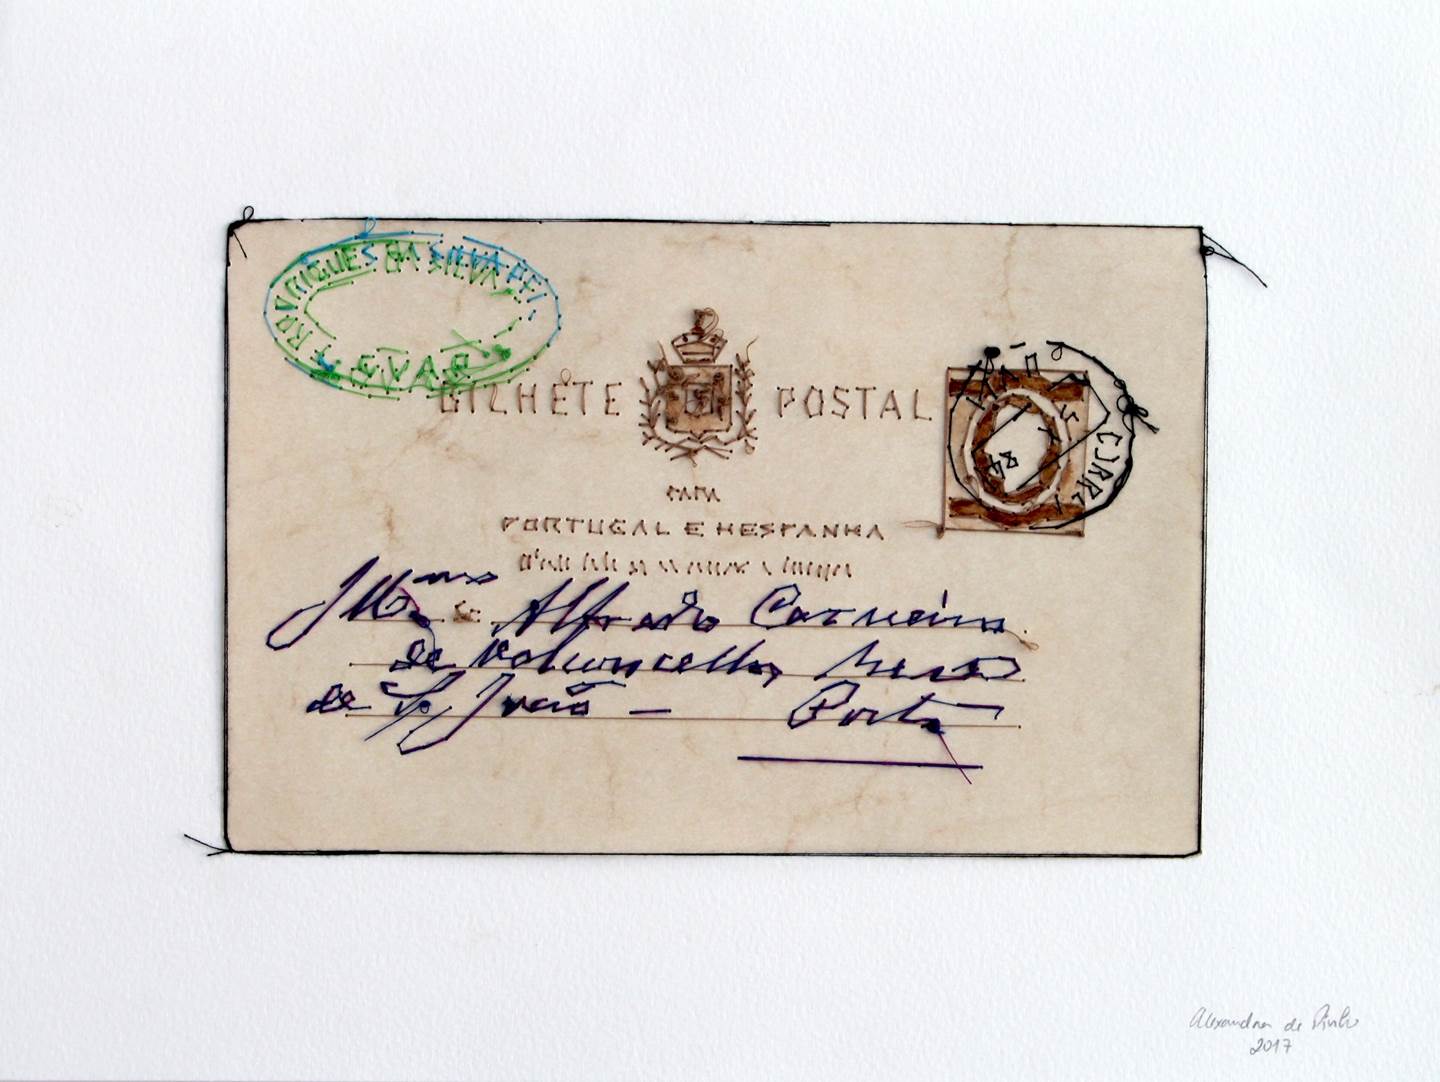 Bilhete Postal, original   La peinture par Alexandra de Pinho